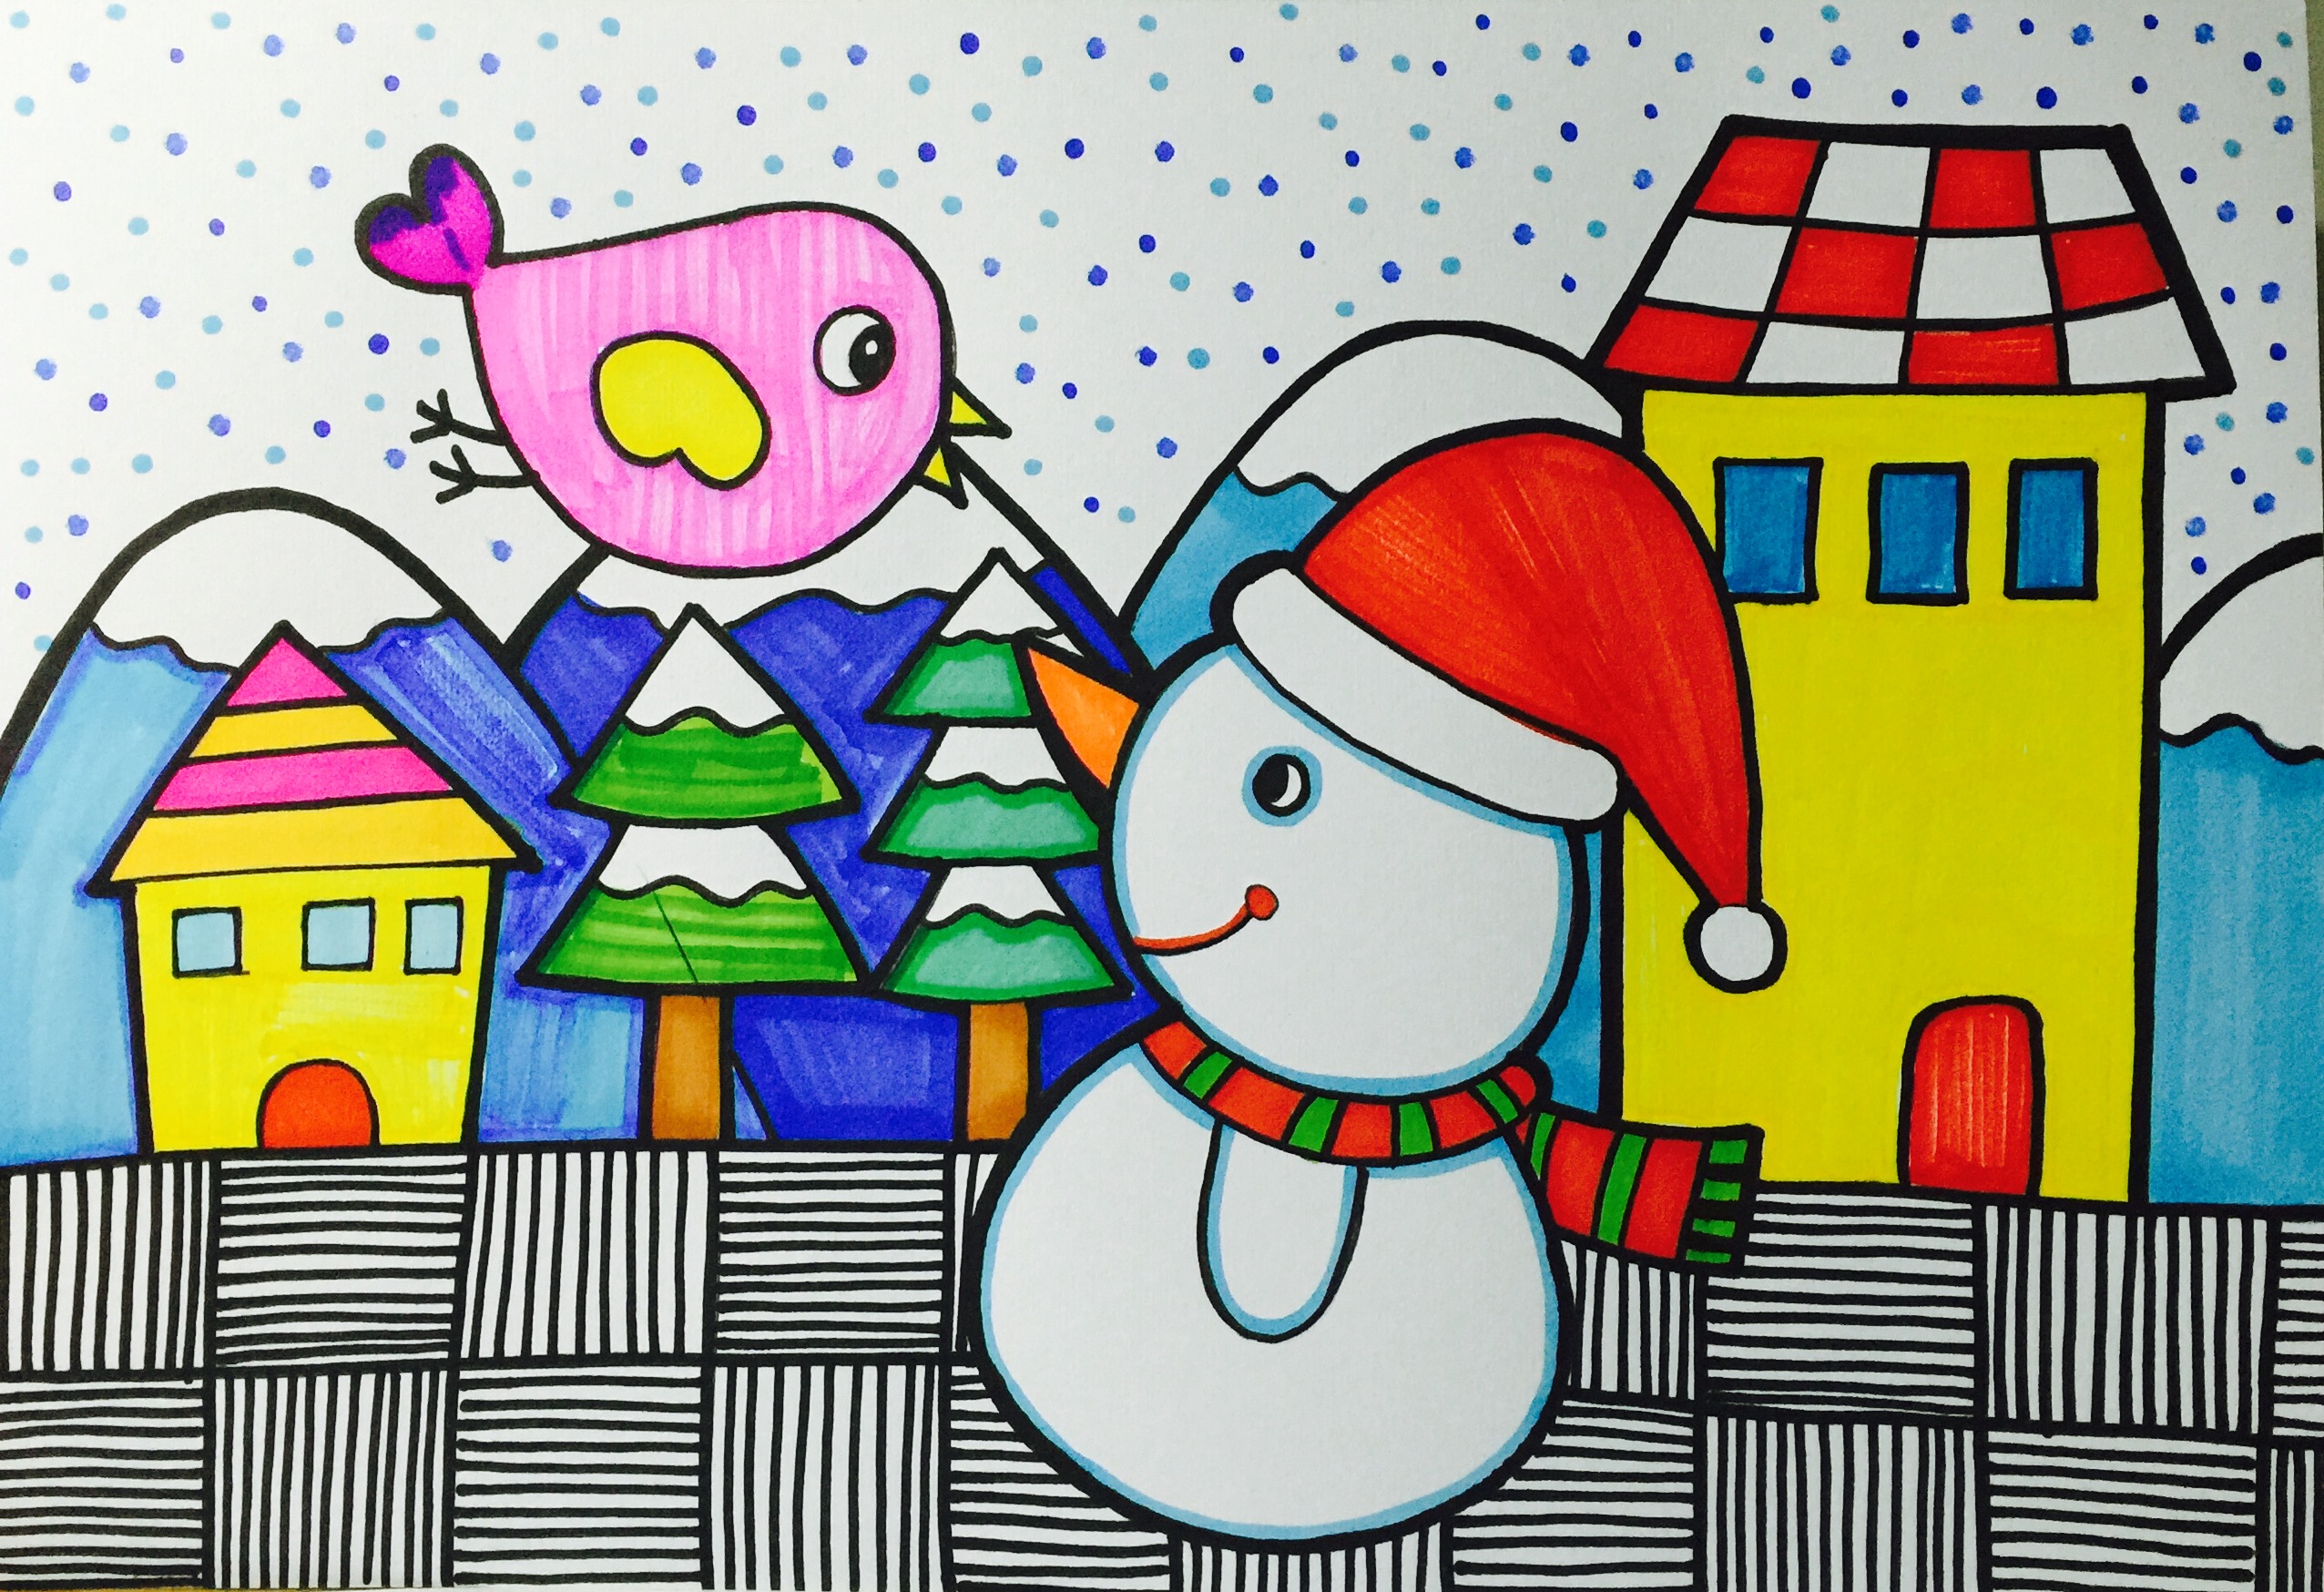 儿童画雪景 简易图片